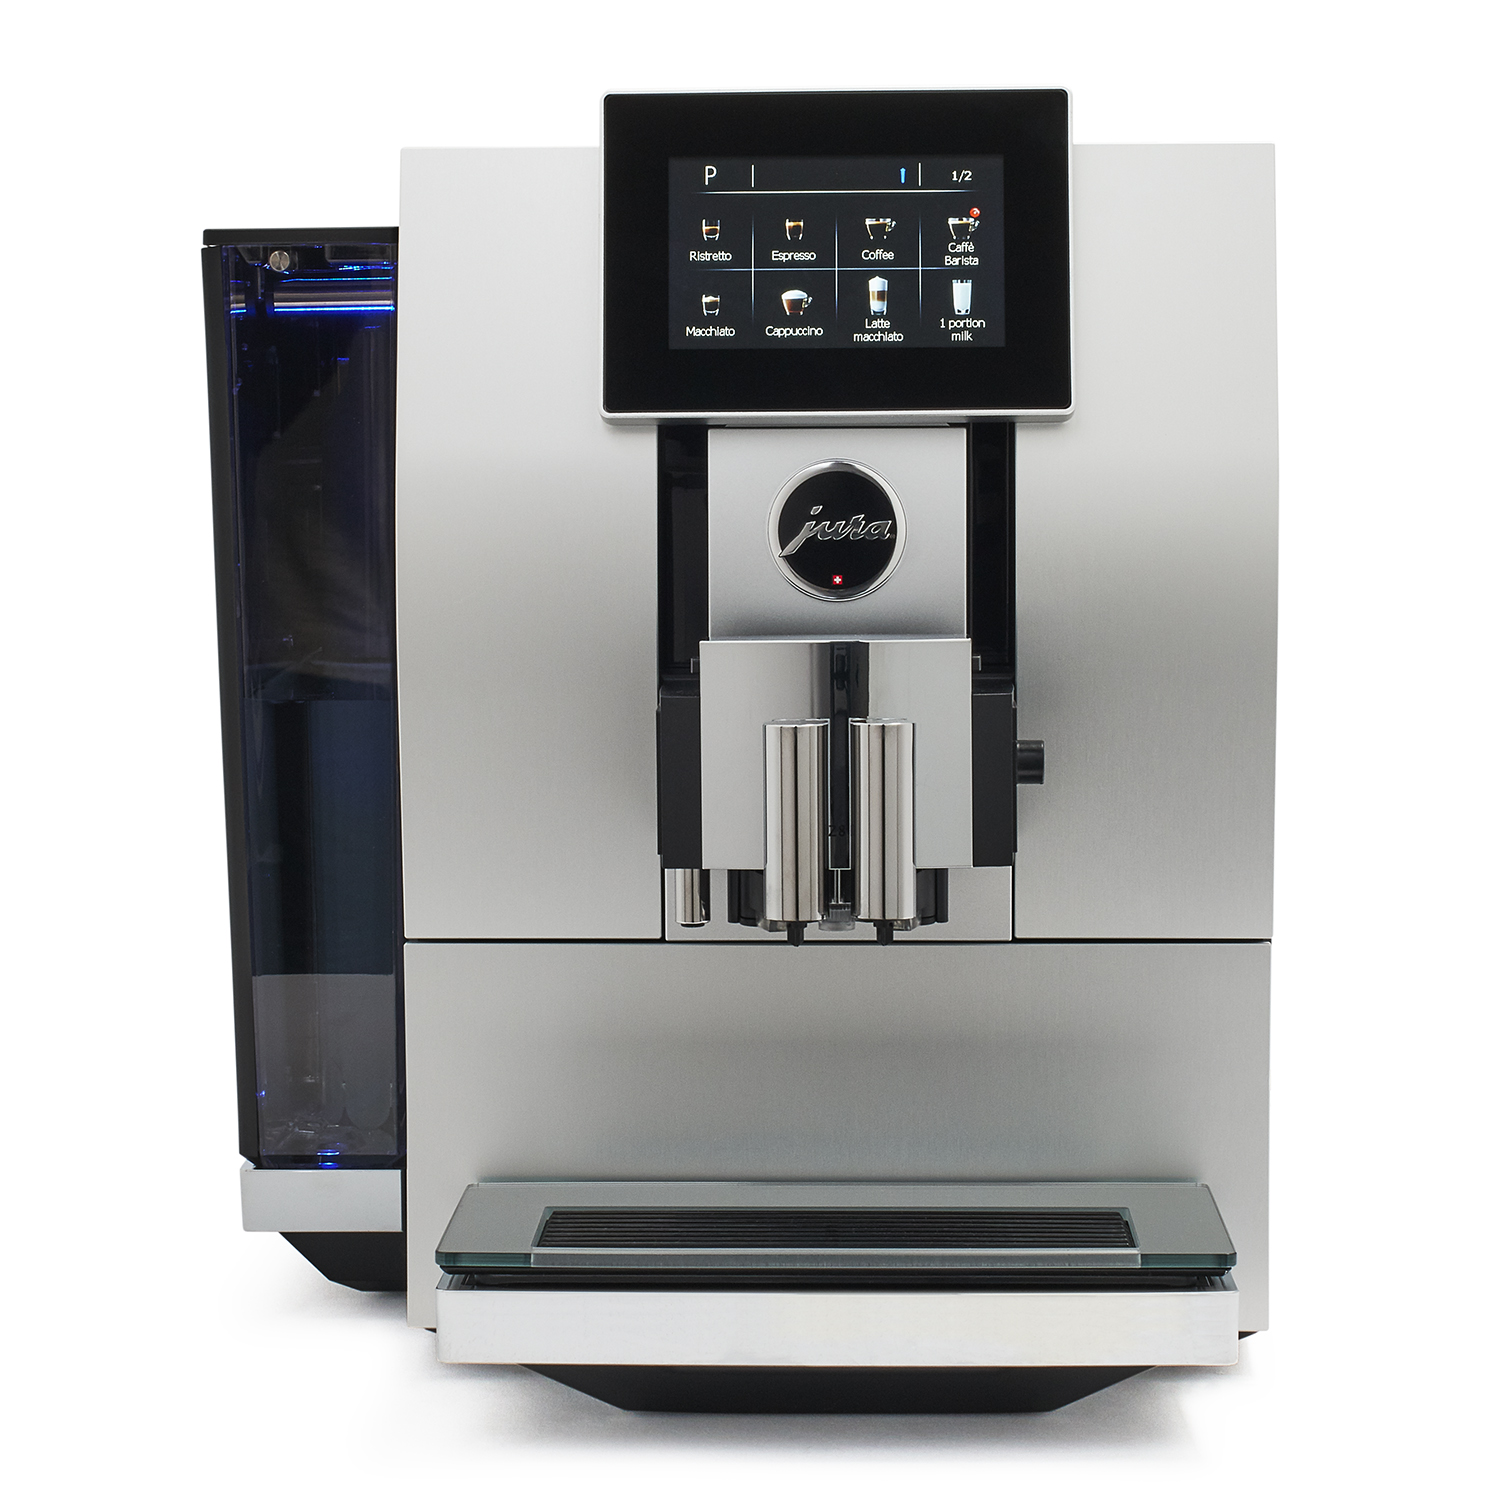 Jura Z6 Coffee Machine Instructions